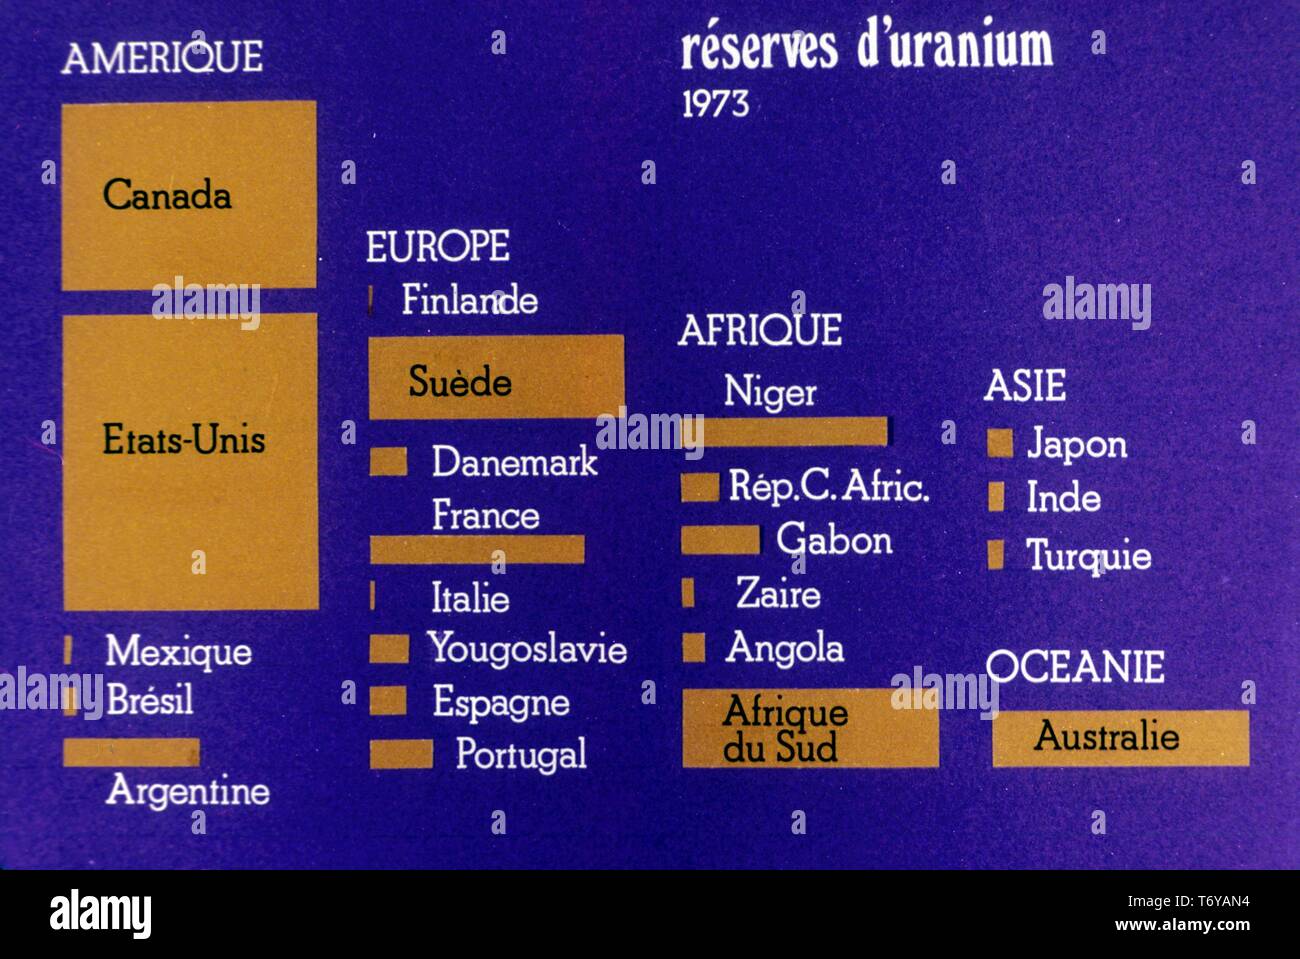 Grafico, denominata in francese, graficamente raffiguranti international riserve di uranio da paese a paese, 1973. Immagine cortesia del Dipartimento Americano di Energia. () Foto Stock